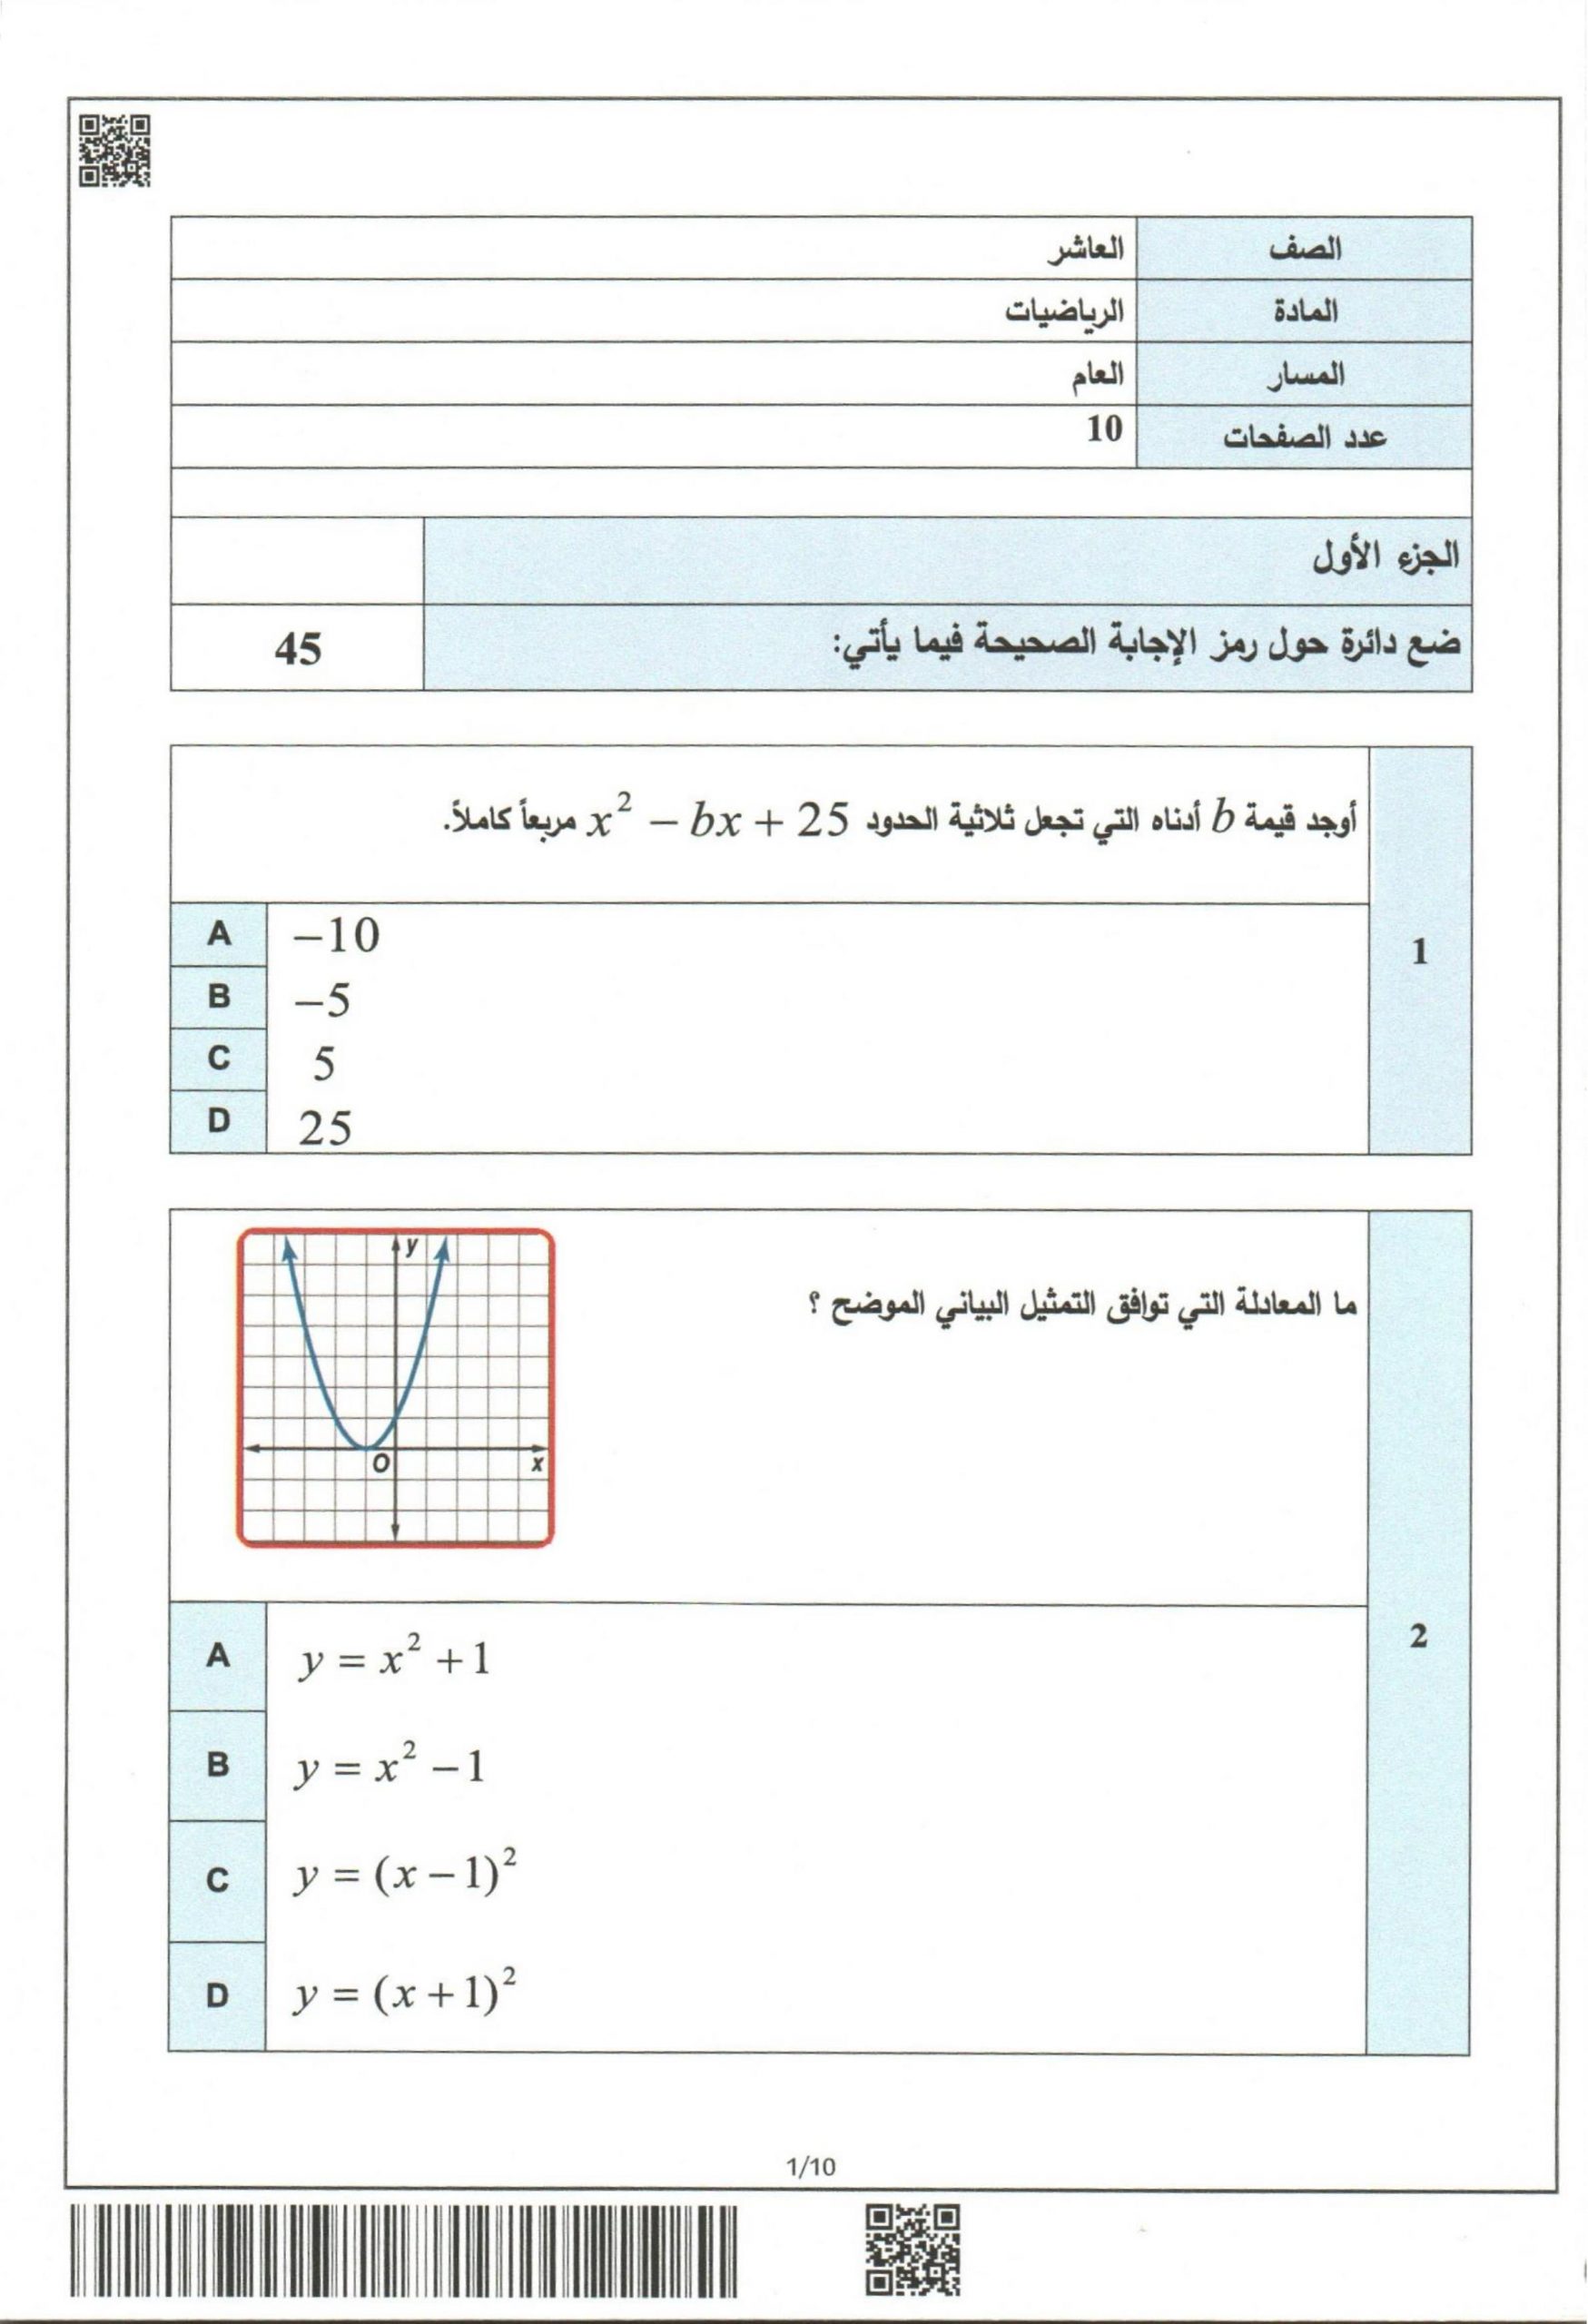 امتحان نهاية الفصل الدراسي الاول 2019-2020 الصف العاشر مادة الرياضيات المتكاملة 